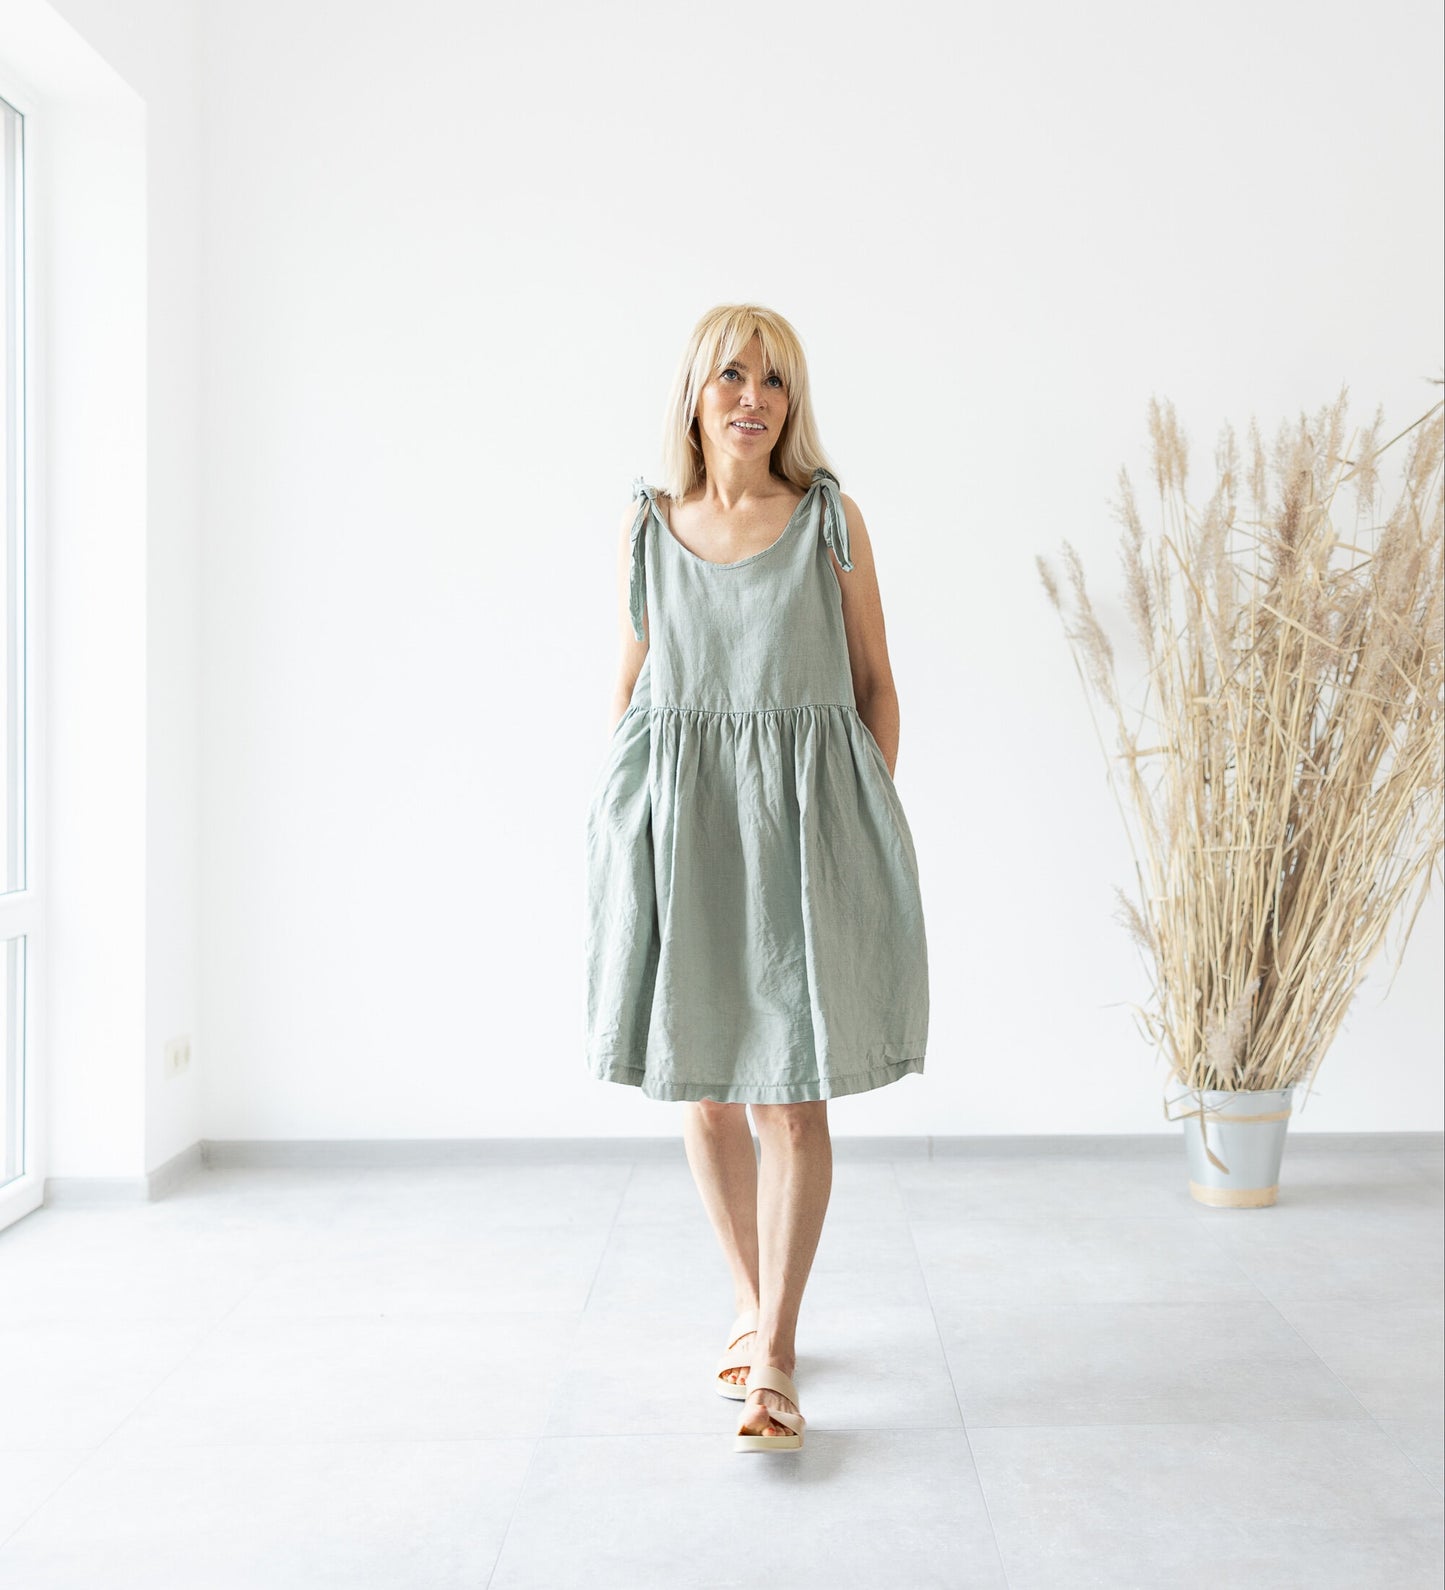 Linen Dress With Pockets  High quality linen summer dresses –  MinimalisticLinen